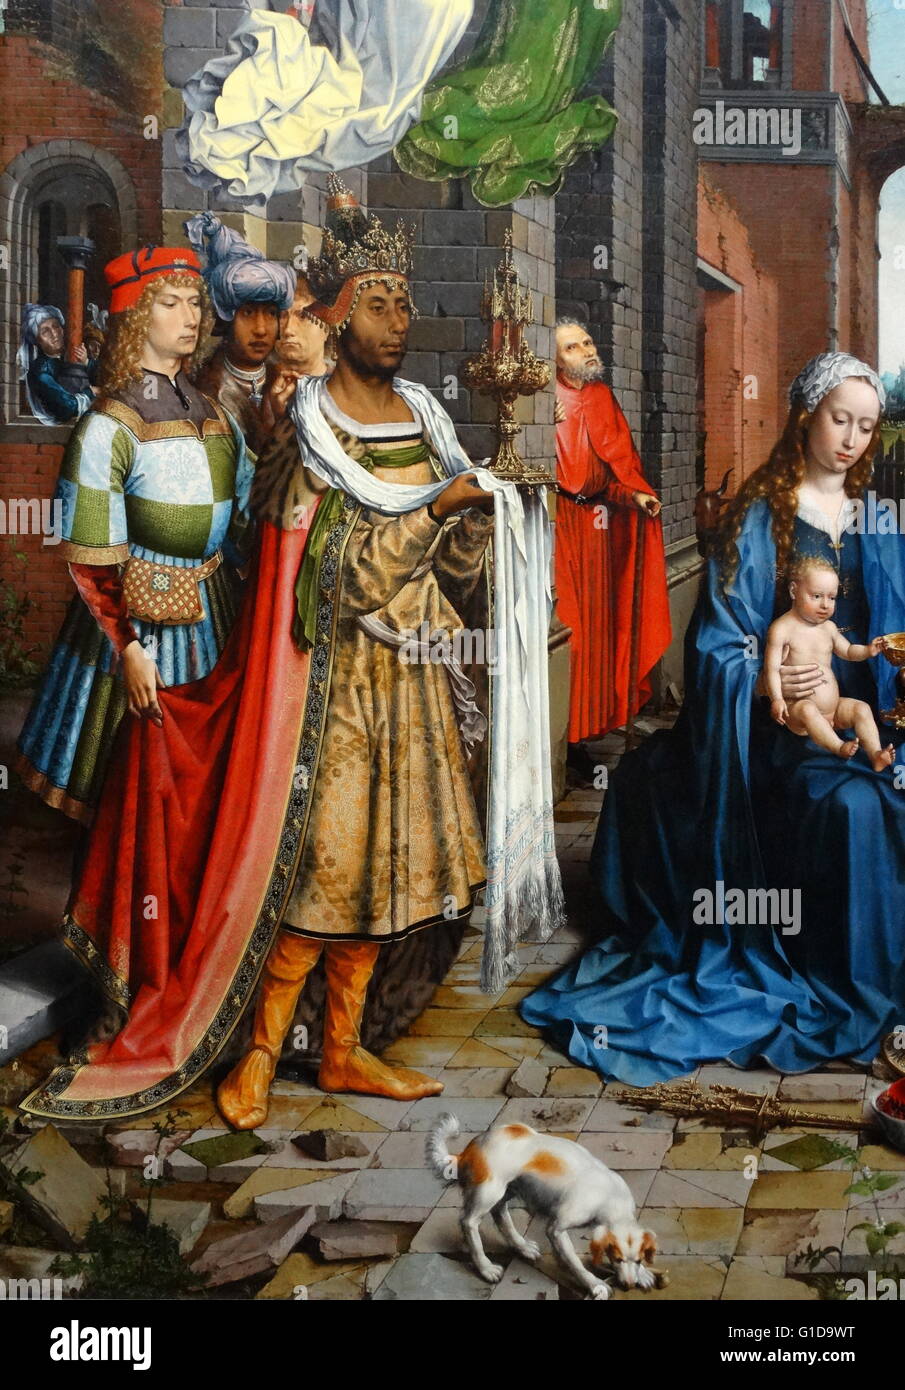 Detail des Balthasar von der Anbetung der Könige ist ein großes Öl-auf-Eiche-Gemälde von Jan Gossaert (geborene Jean Gossaert, auch bekannt als Jan Mabuse) datiert auf 1510 – 15, Darstellung der Anbetung der Könige. Jan Gossaert (c.1478 – 1532) war ein flämischer Maler auch bekannt als Jan Mabuse Stockfoto